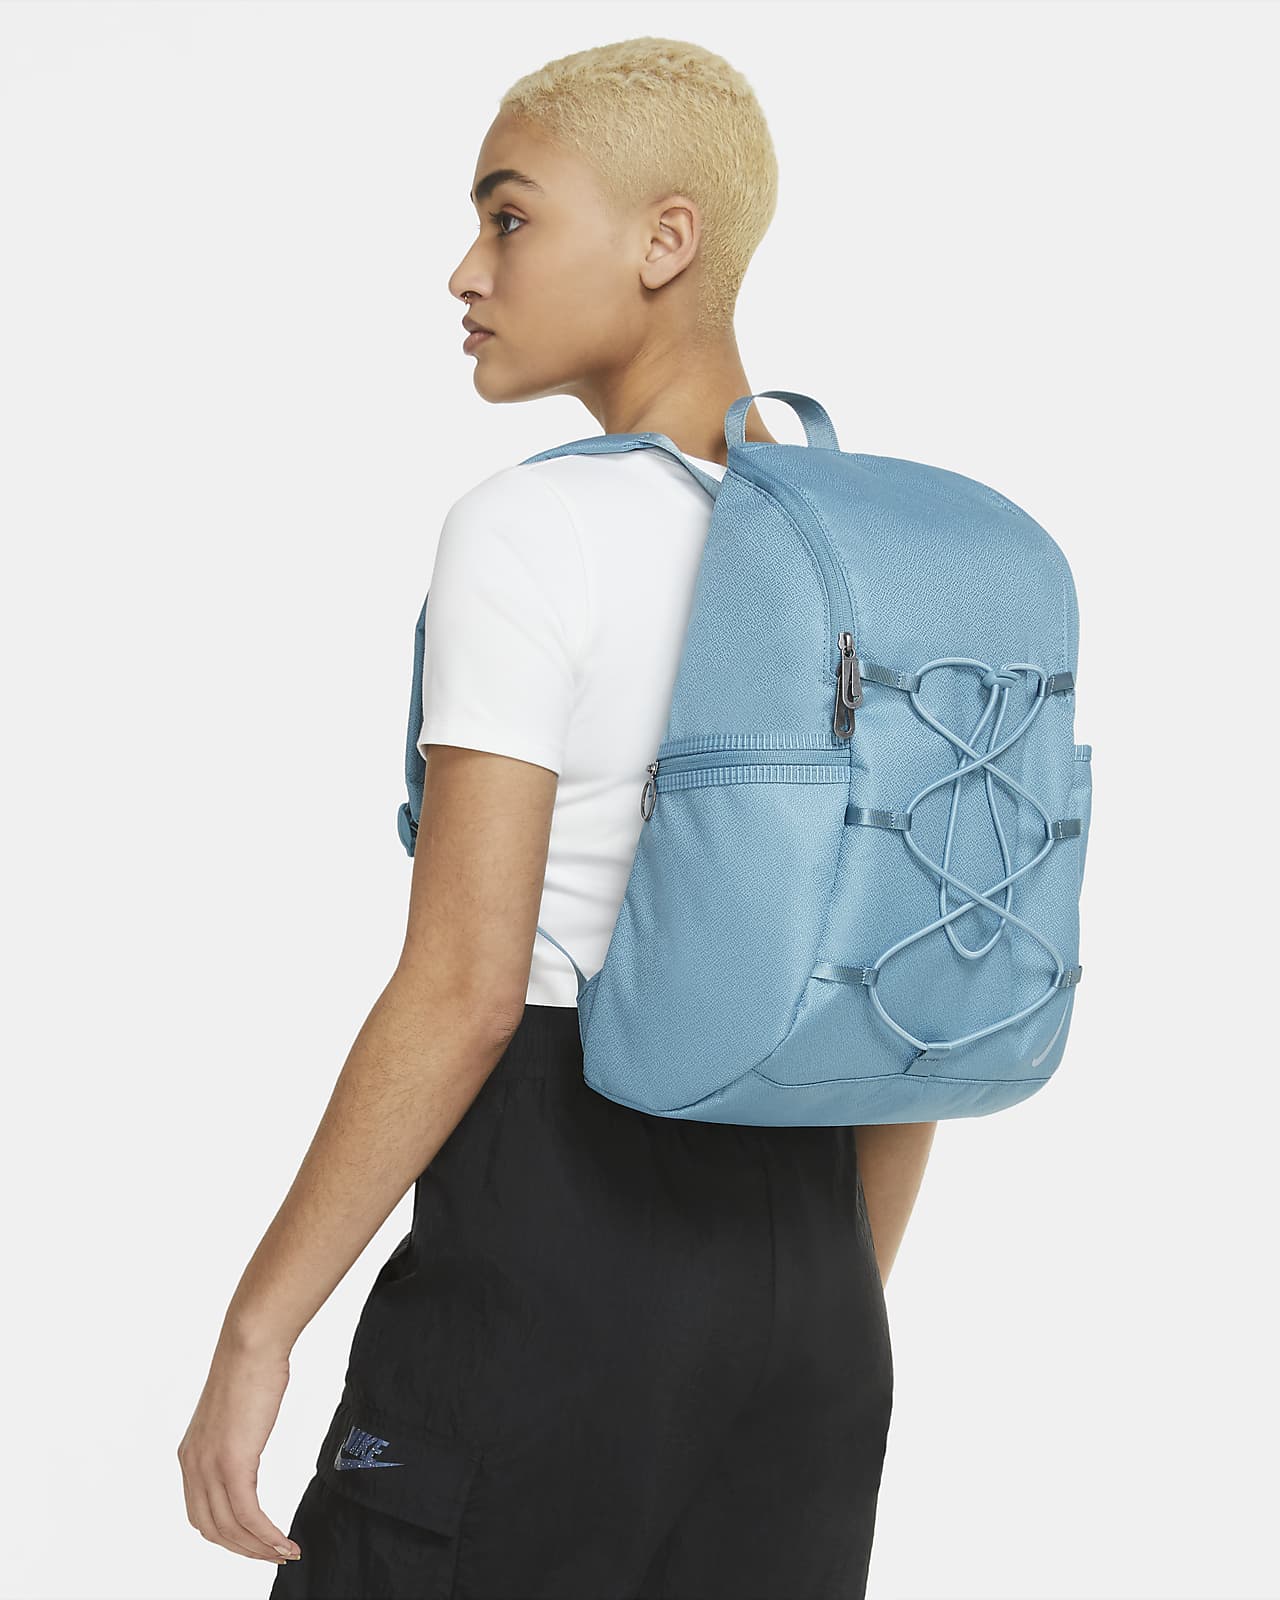 one shoulder backpack nike